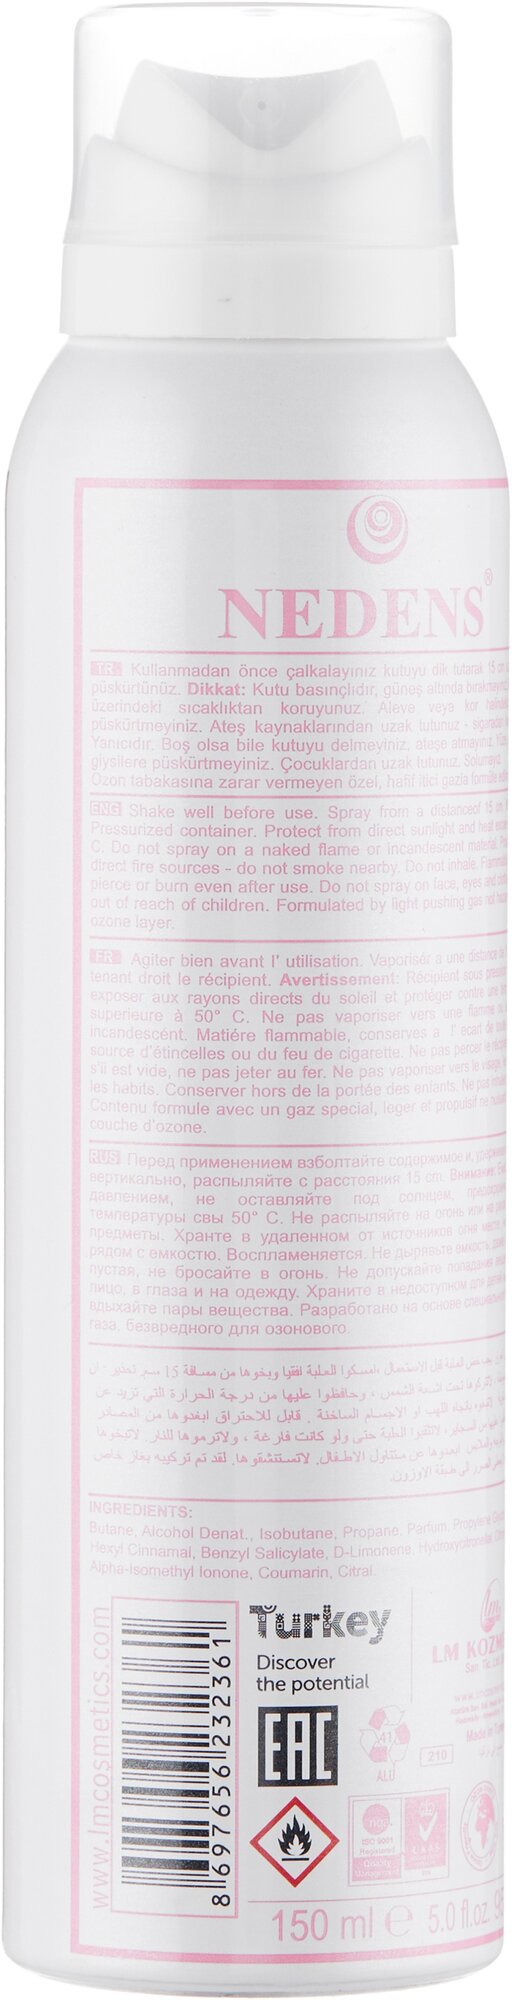 Парфюмированный дезодорант LM Cosmetics Joie 150 ml